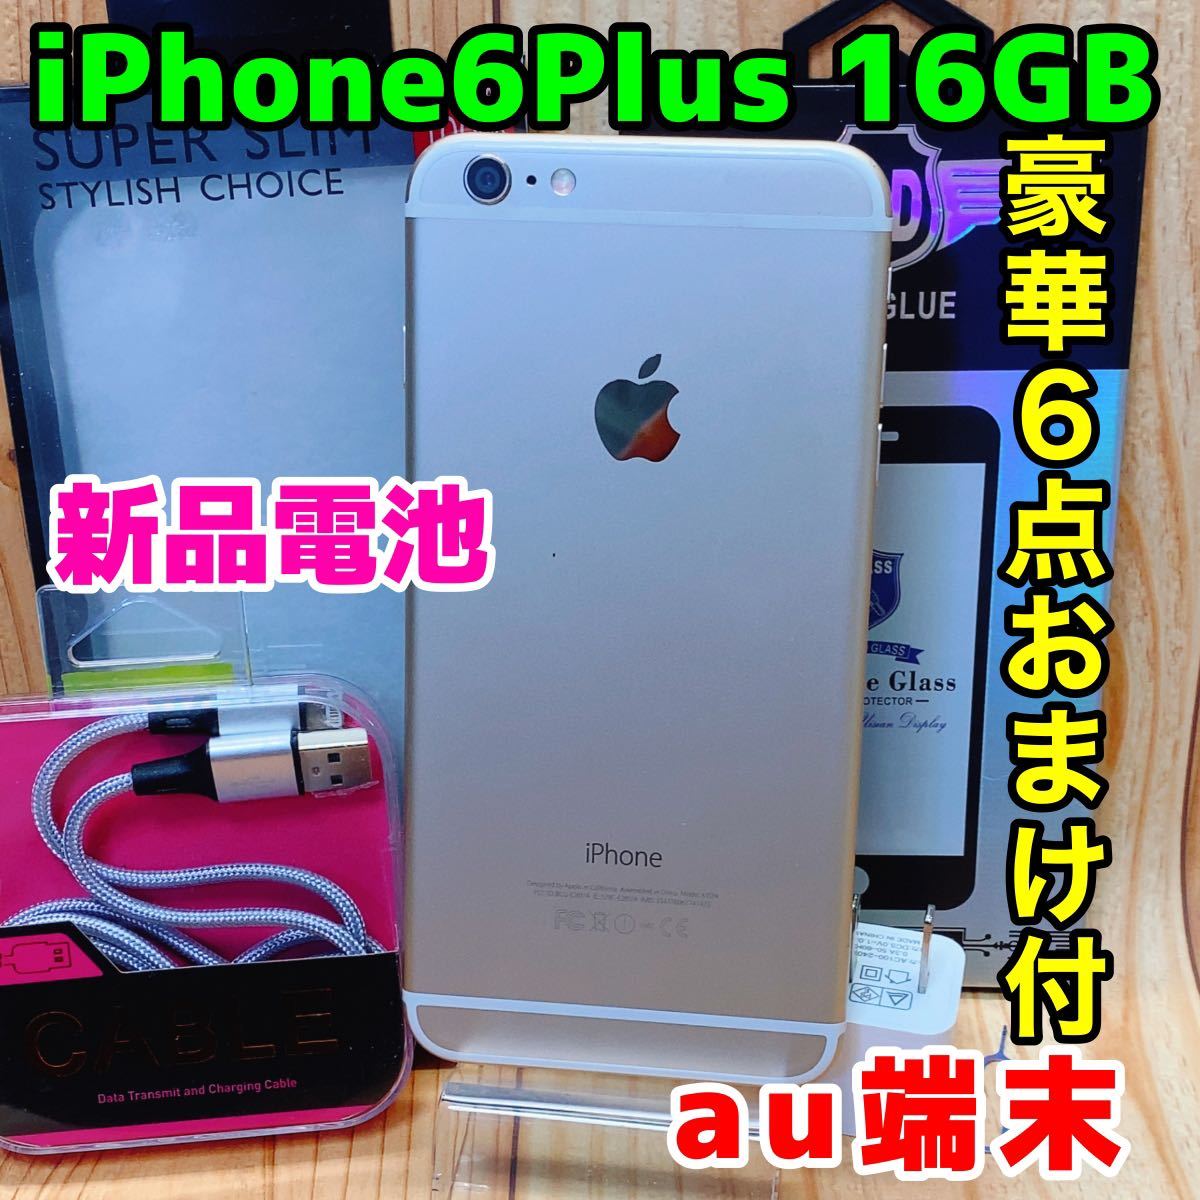 プッシュされた製品 iPhone6s 34gb新品 iPhone用ケース